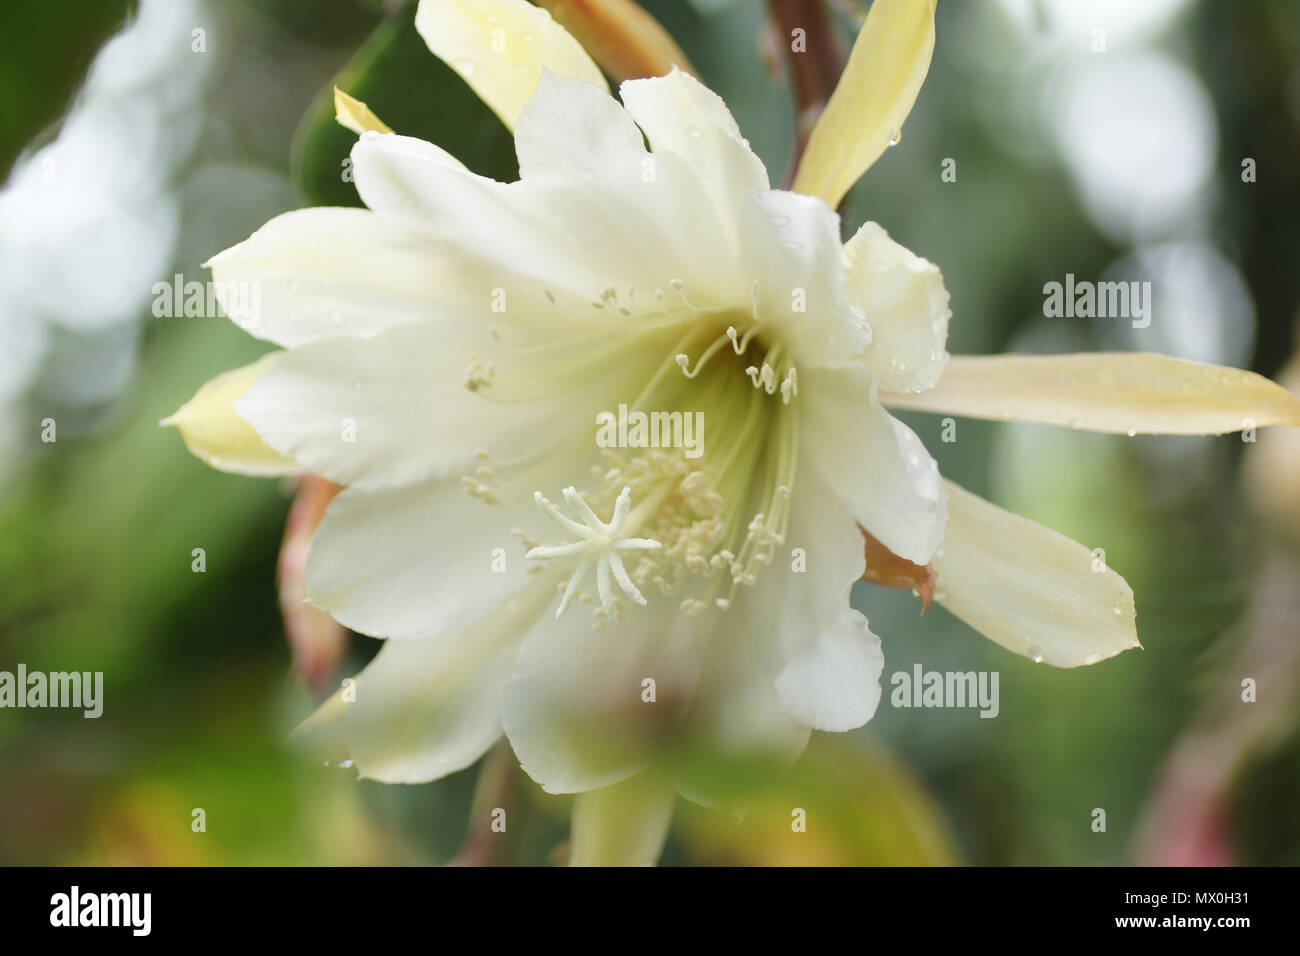 Epiphyllum 'White Splendour' Stock Photo